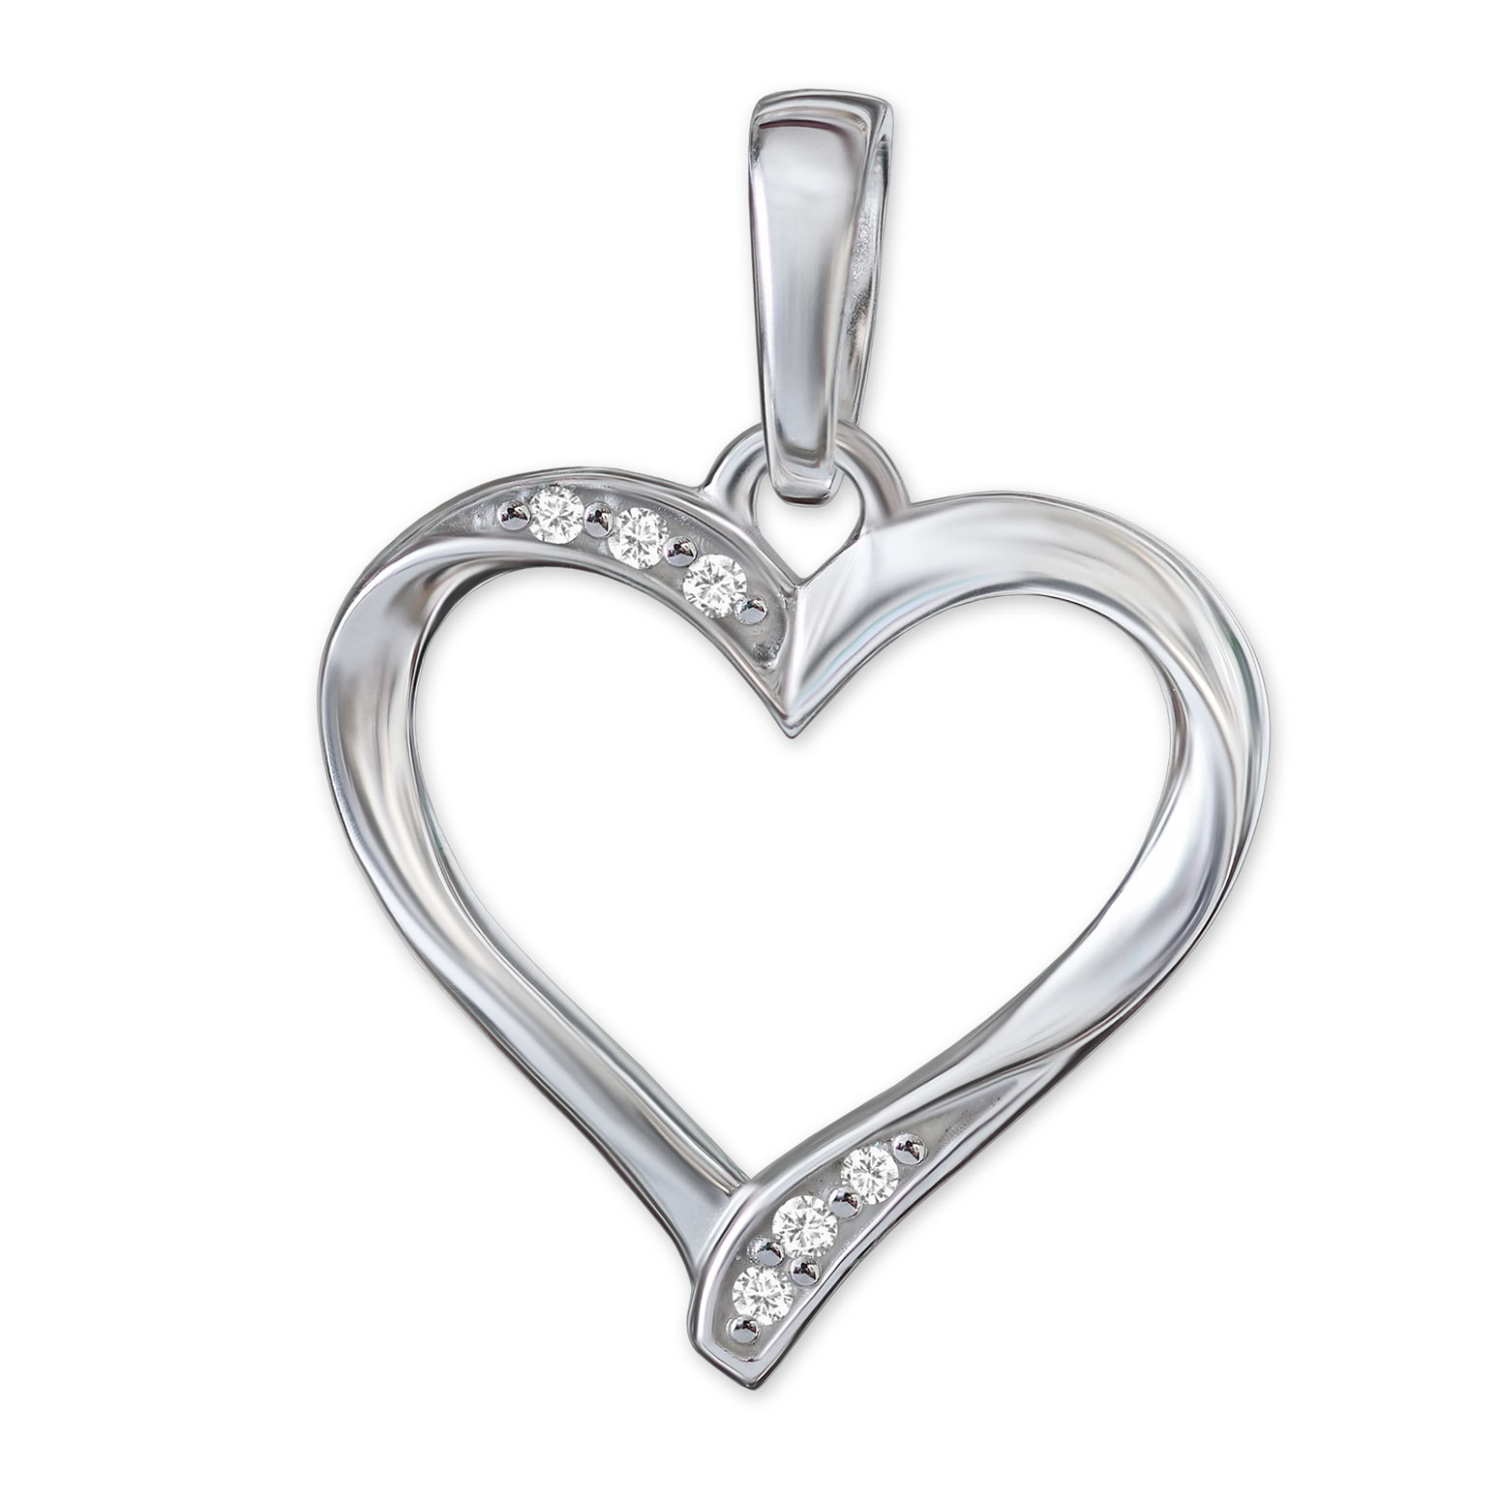 Silberner Damen Herz Anhänger 13 mm offen elegant schmal geschwungene Form mit 6 Zirkonia Sterling Silber 925